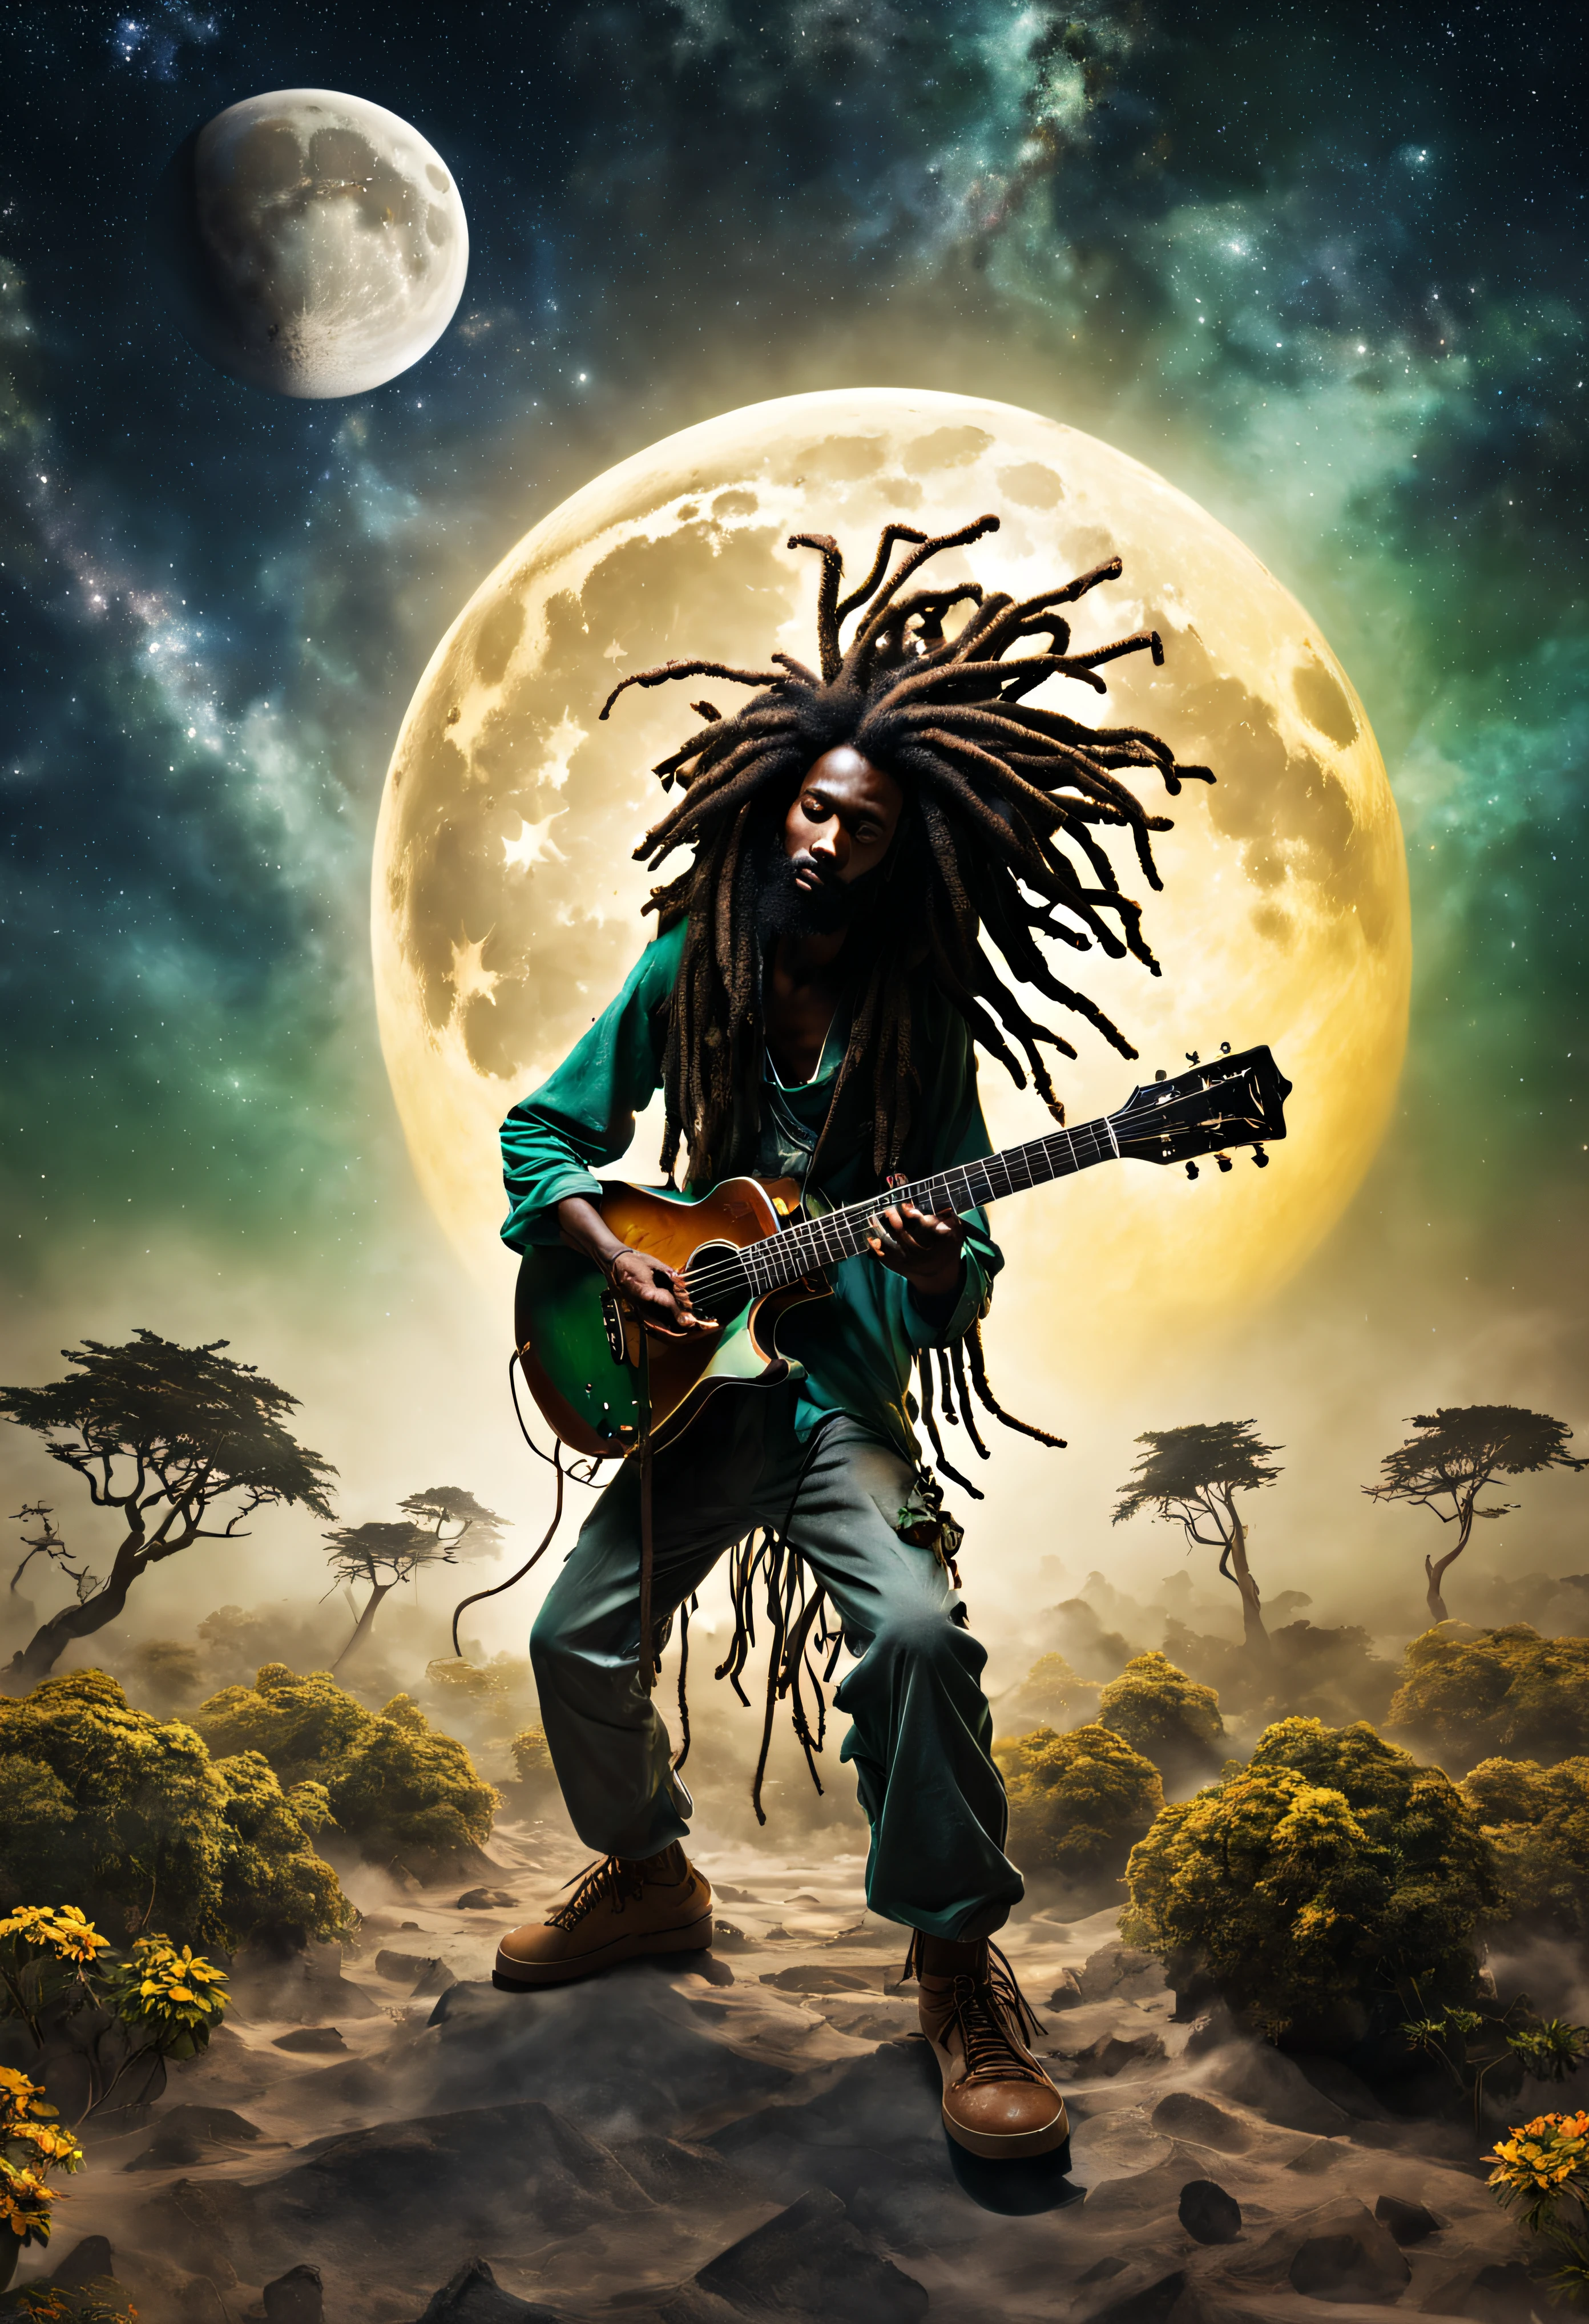 幻影风格, 一位黑人拉斯特法里男子用雷鬼色彩、留着辫子弹吉他的图片, 高质量, 星空 一轮巨大的月亮